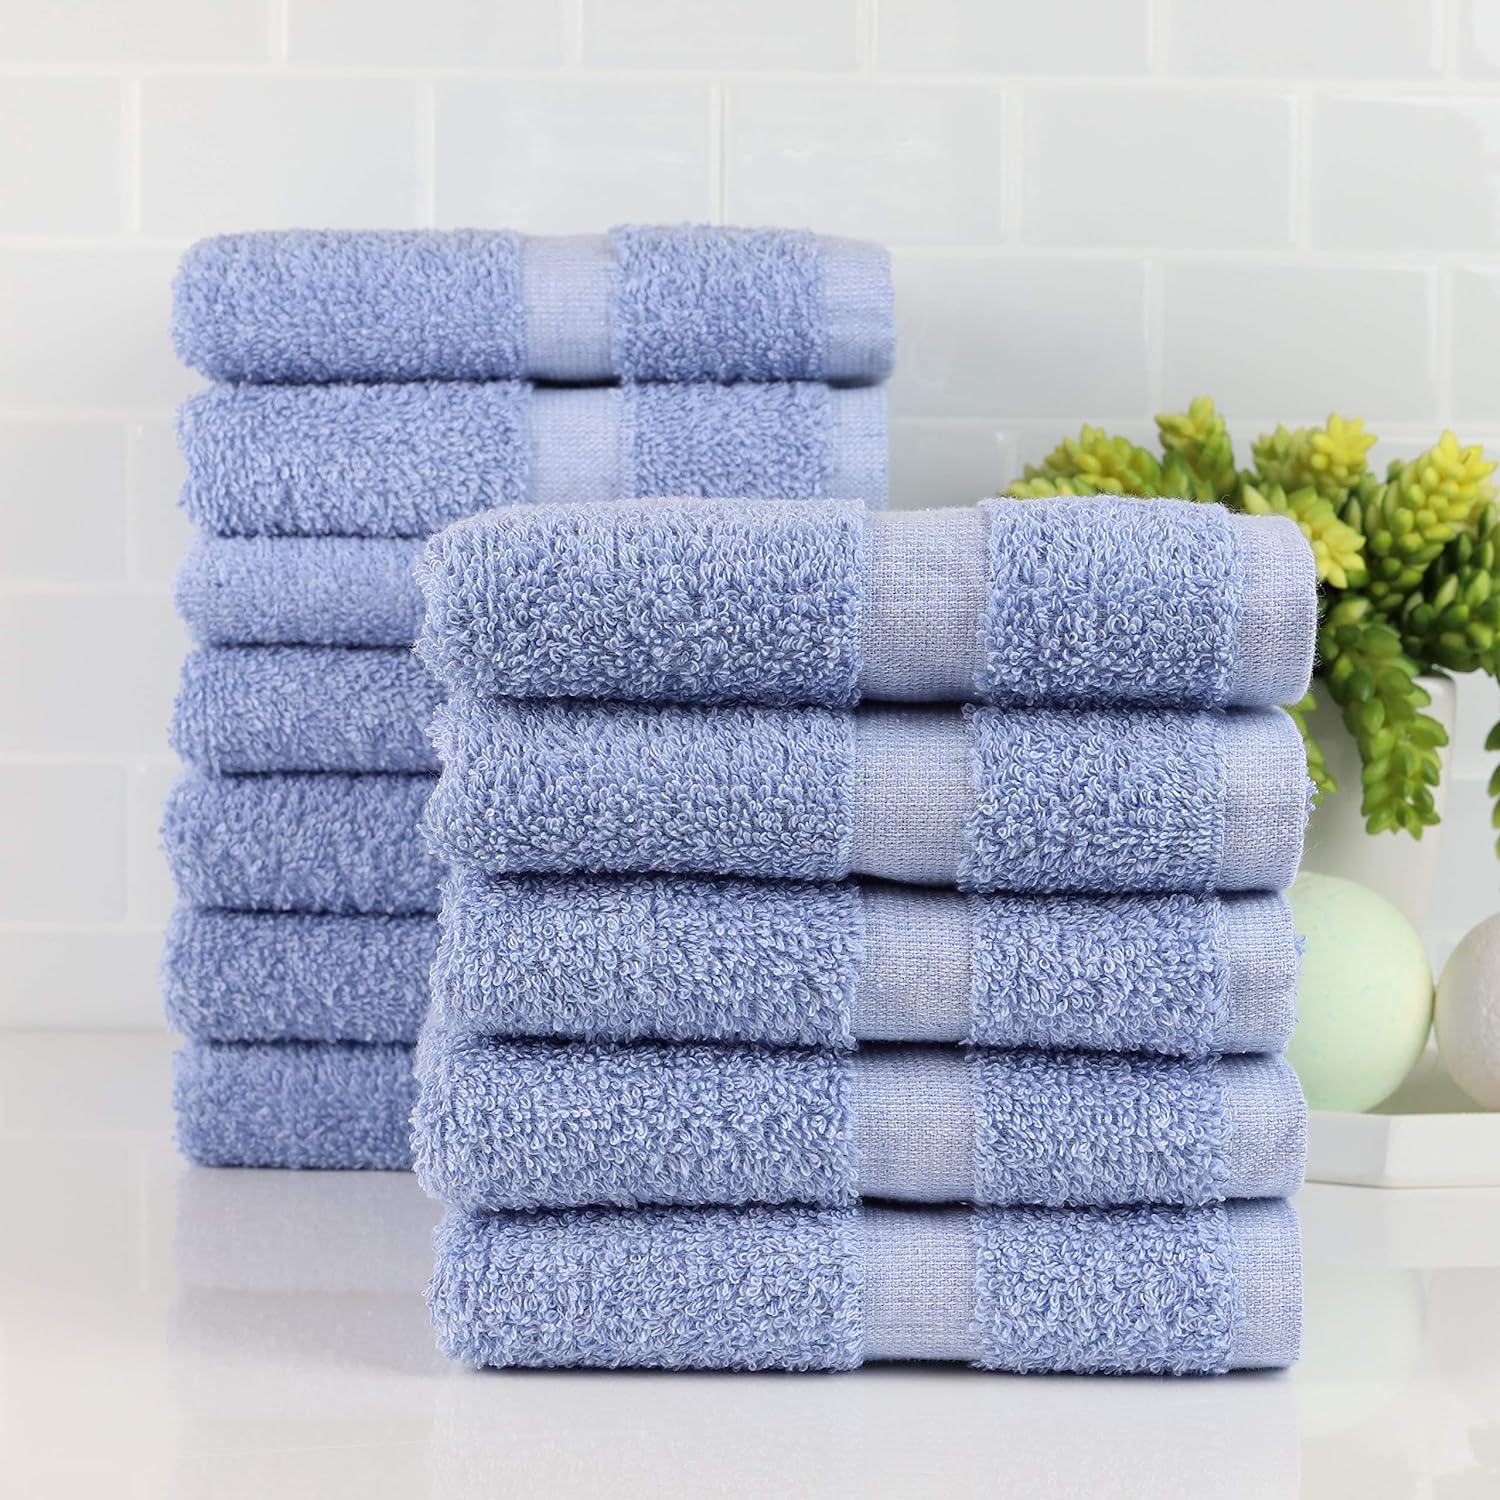 Fibertone Bleach Safe, Microfiber Salon Towels